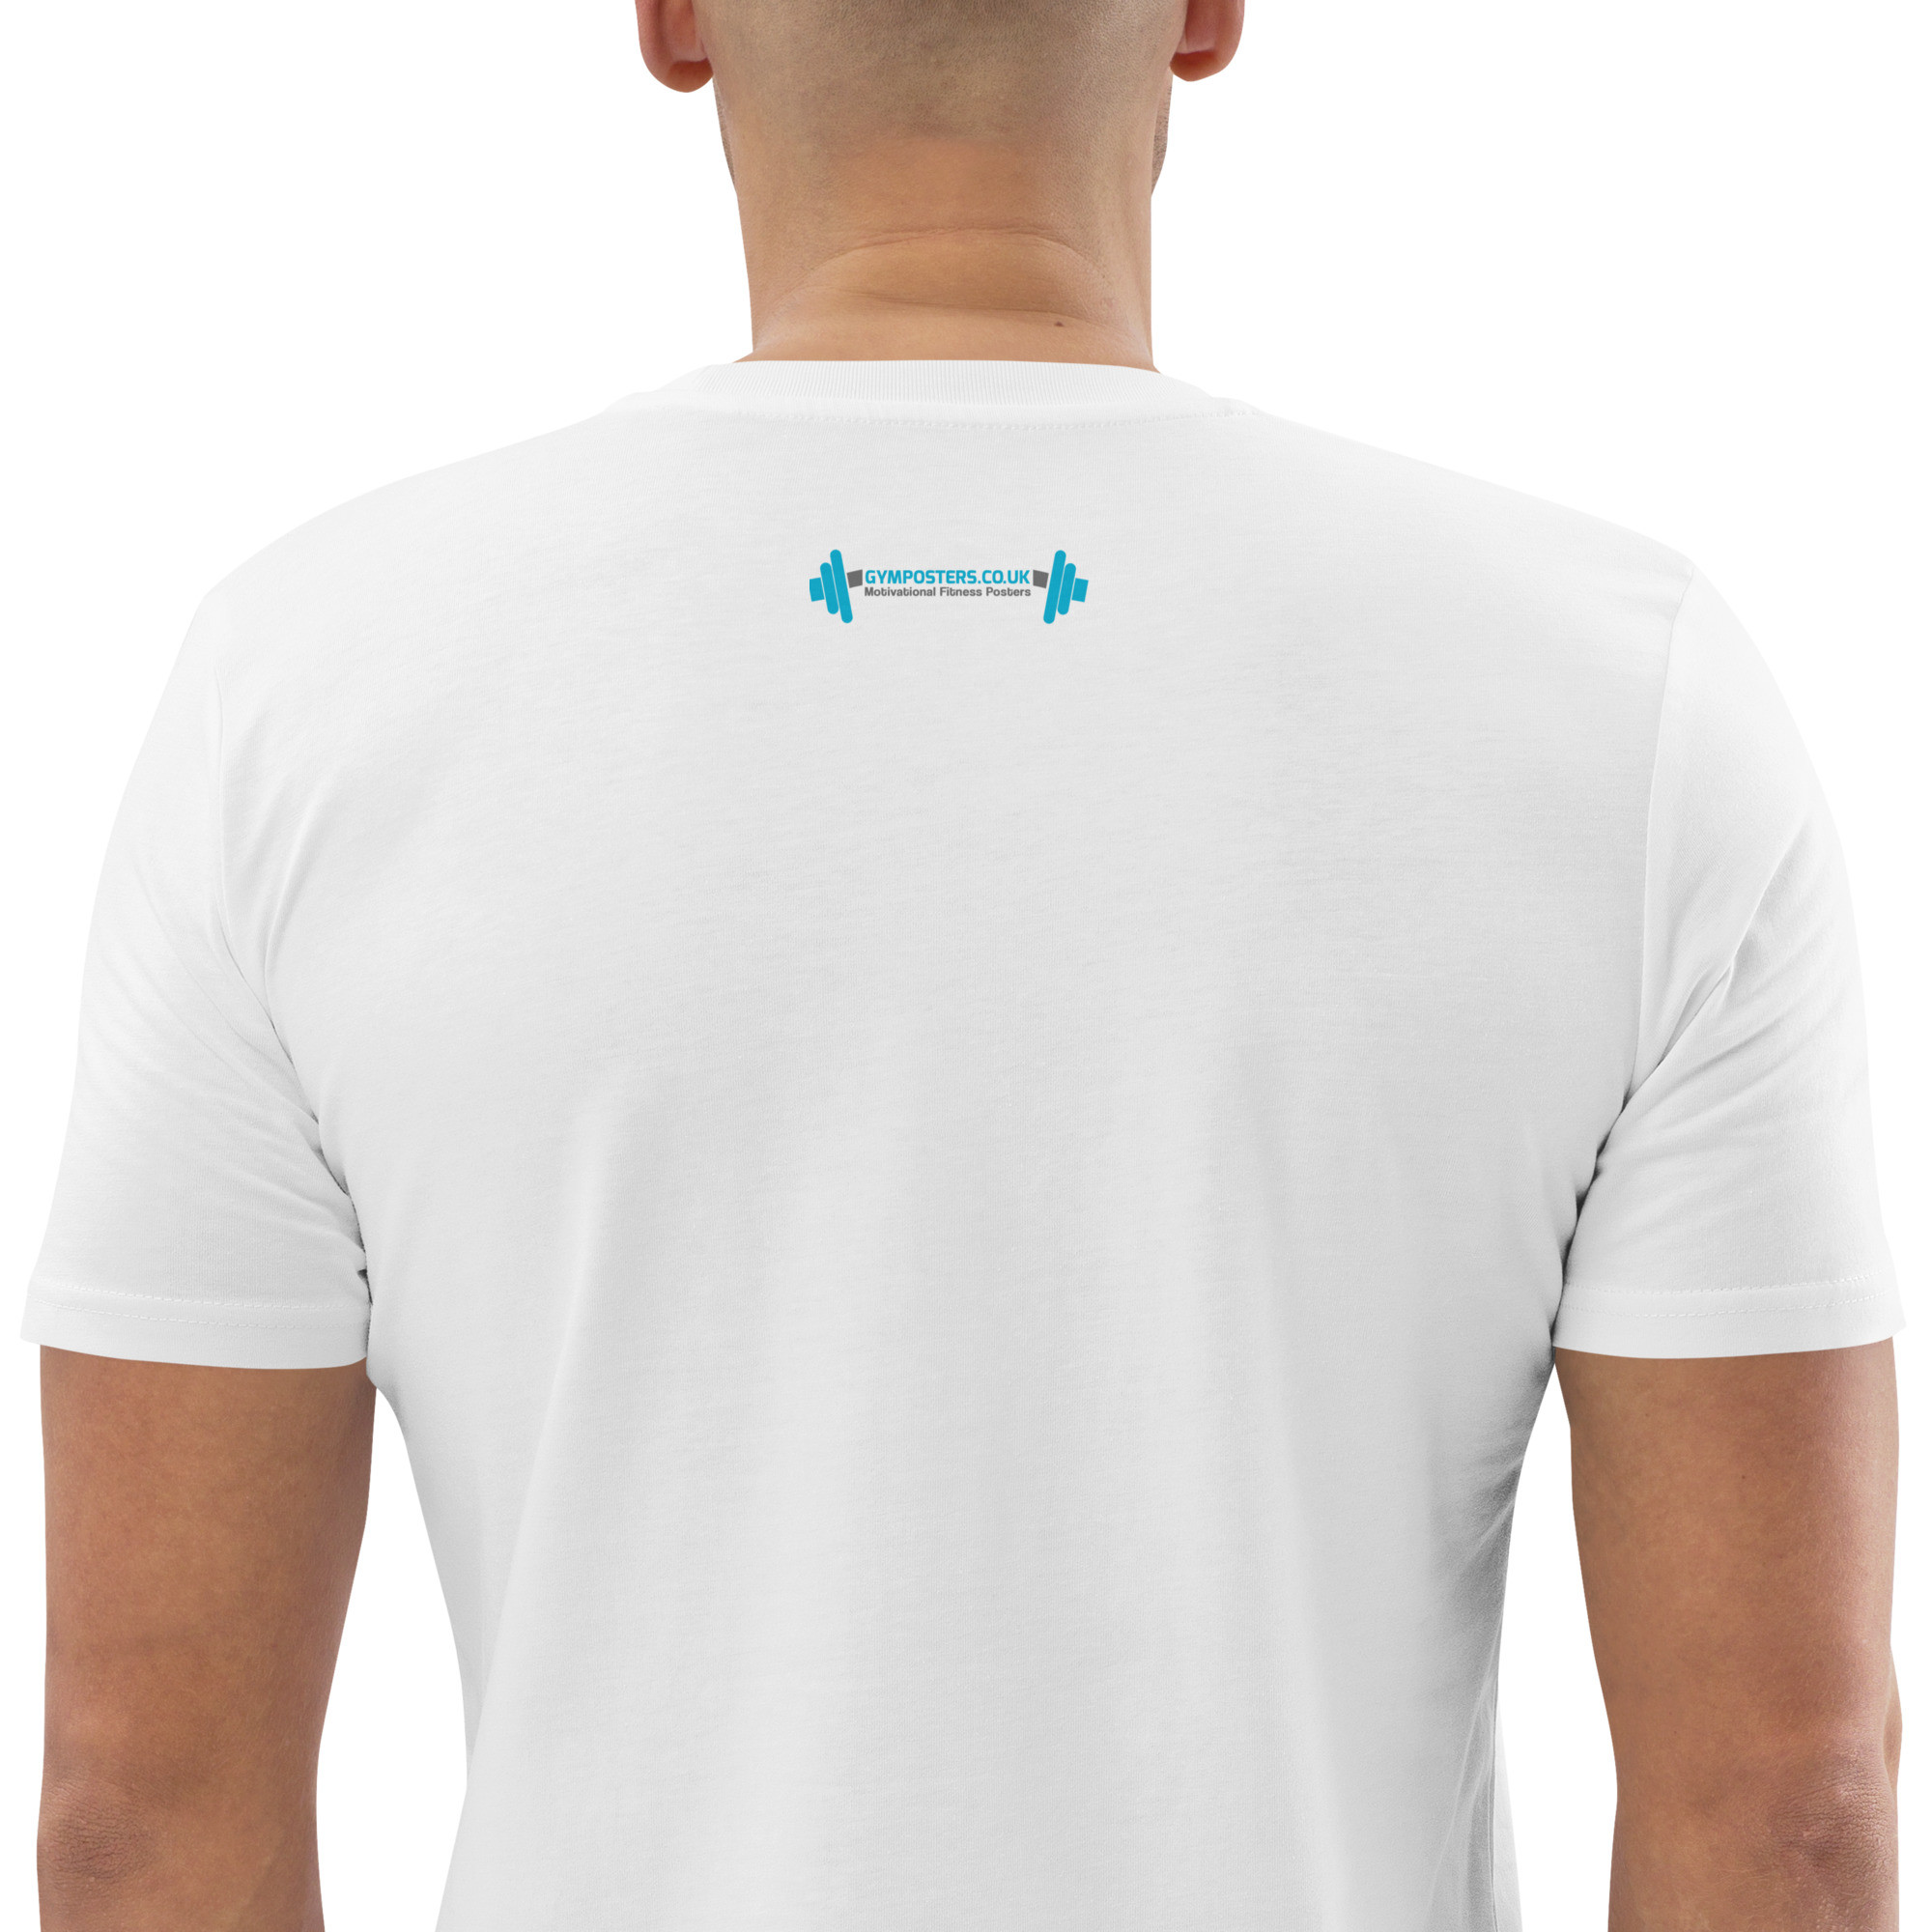 unisex-organic-cotton-t-shirt-white-zoomed-in-2-657848138e082.jpg